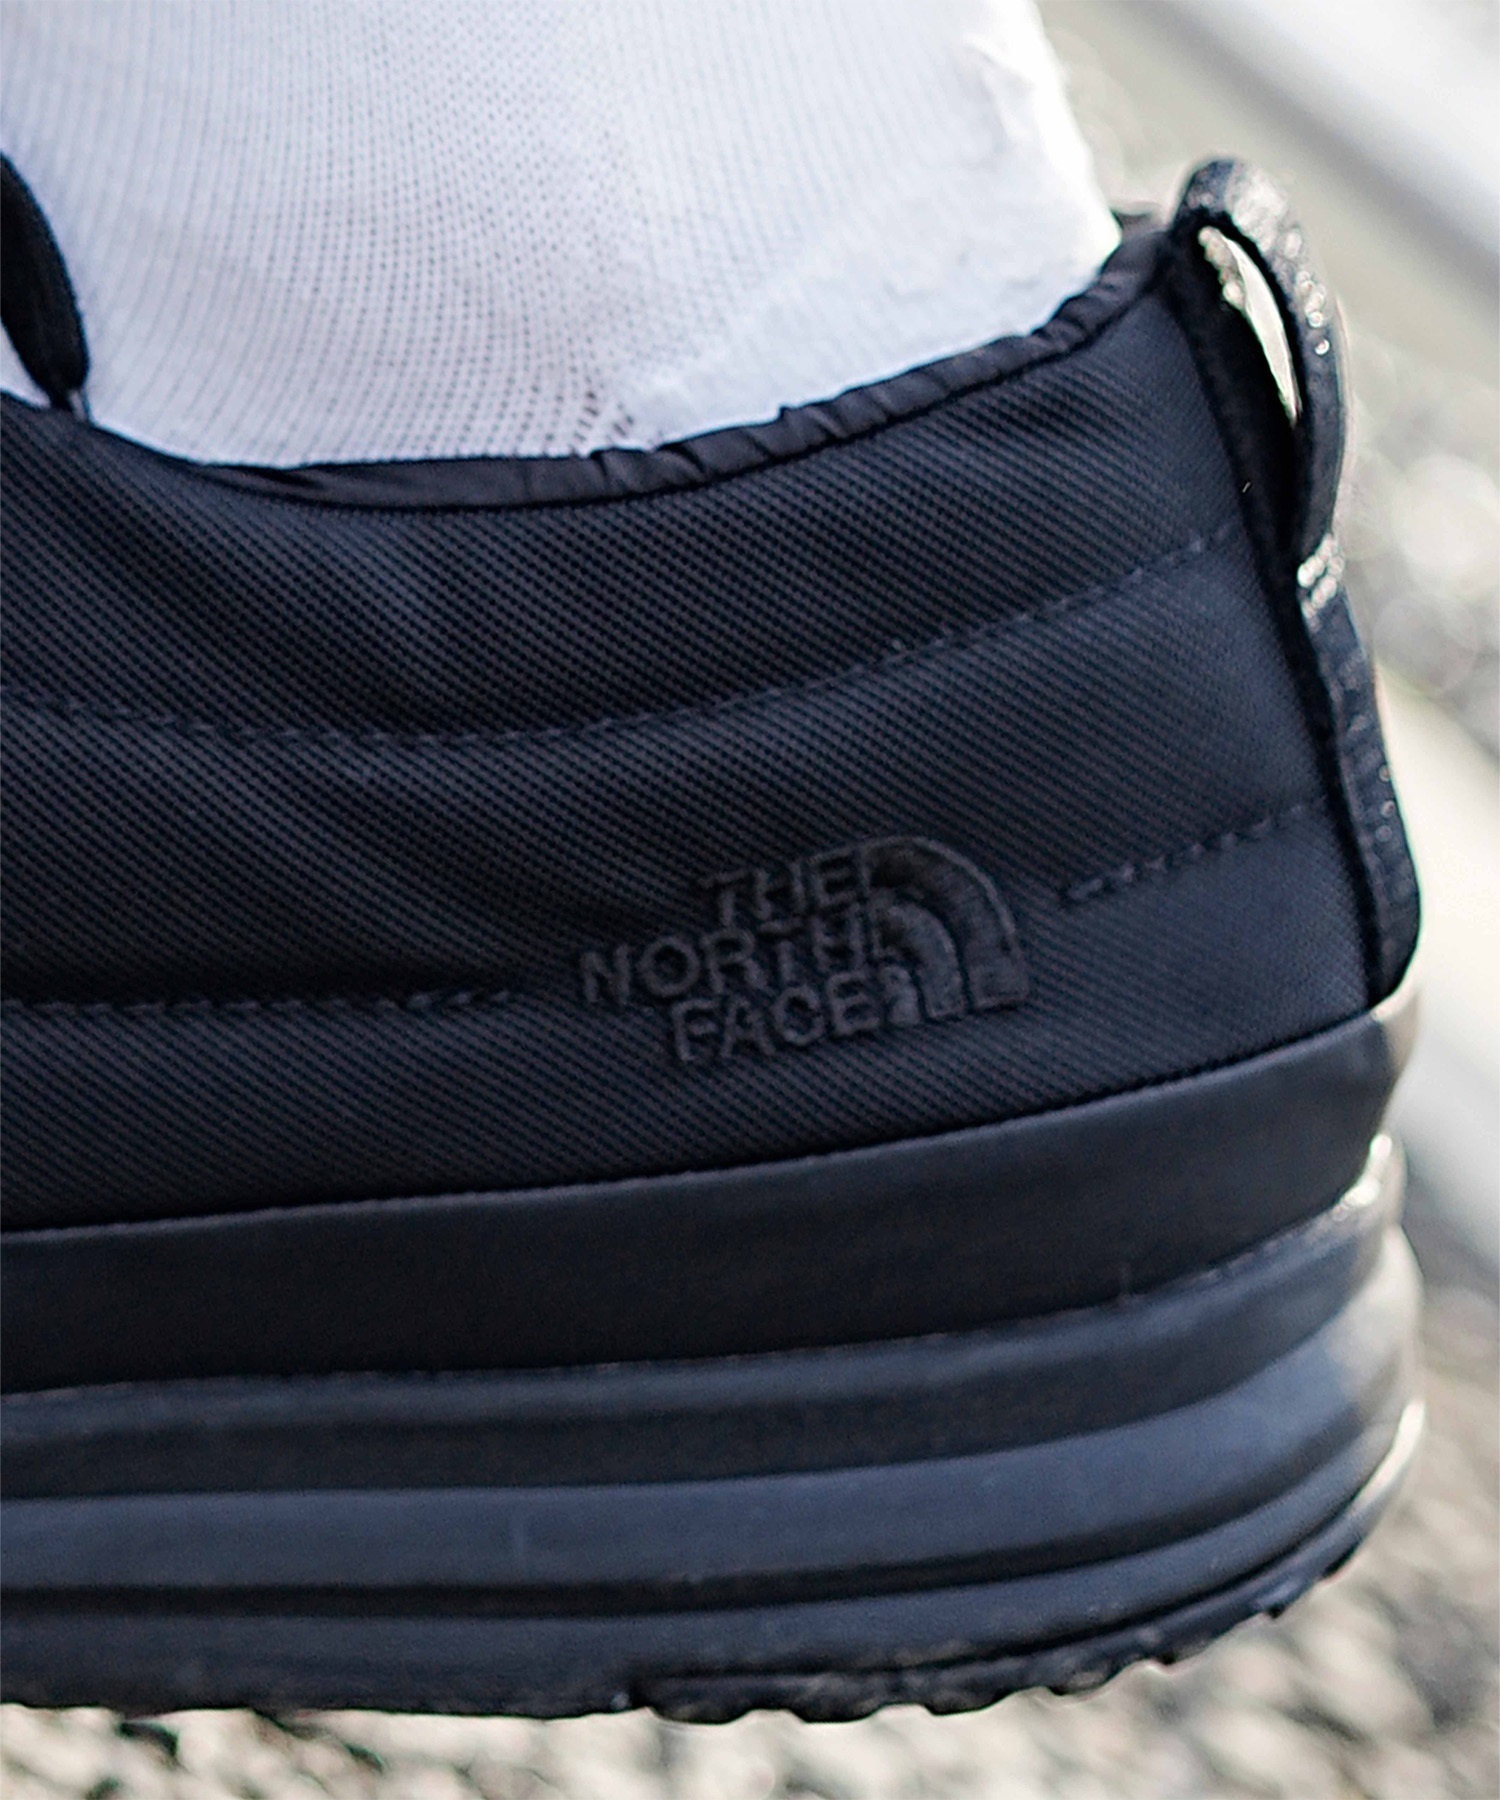 THE NORTH FACE/ザ・ノース・フェイス ヌプシ オンボード ウォータプルーフ モカシン メンズ レディース ブーツ 撥水 防寒 NF52372 CK(CK-23.0cm)